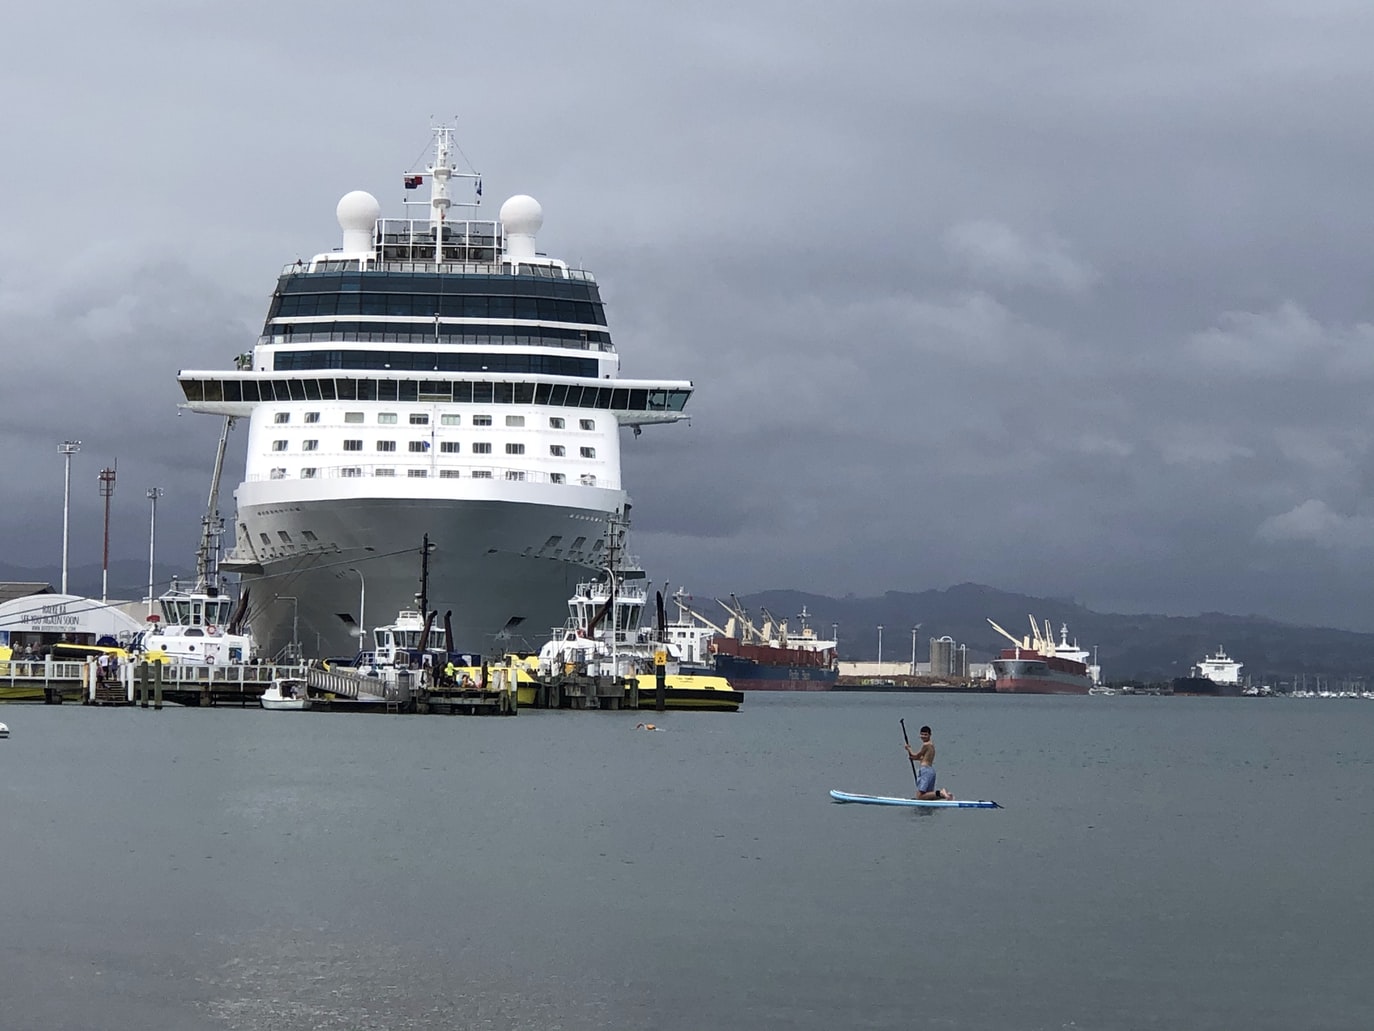 Celebrity Cruise ship docked